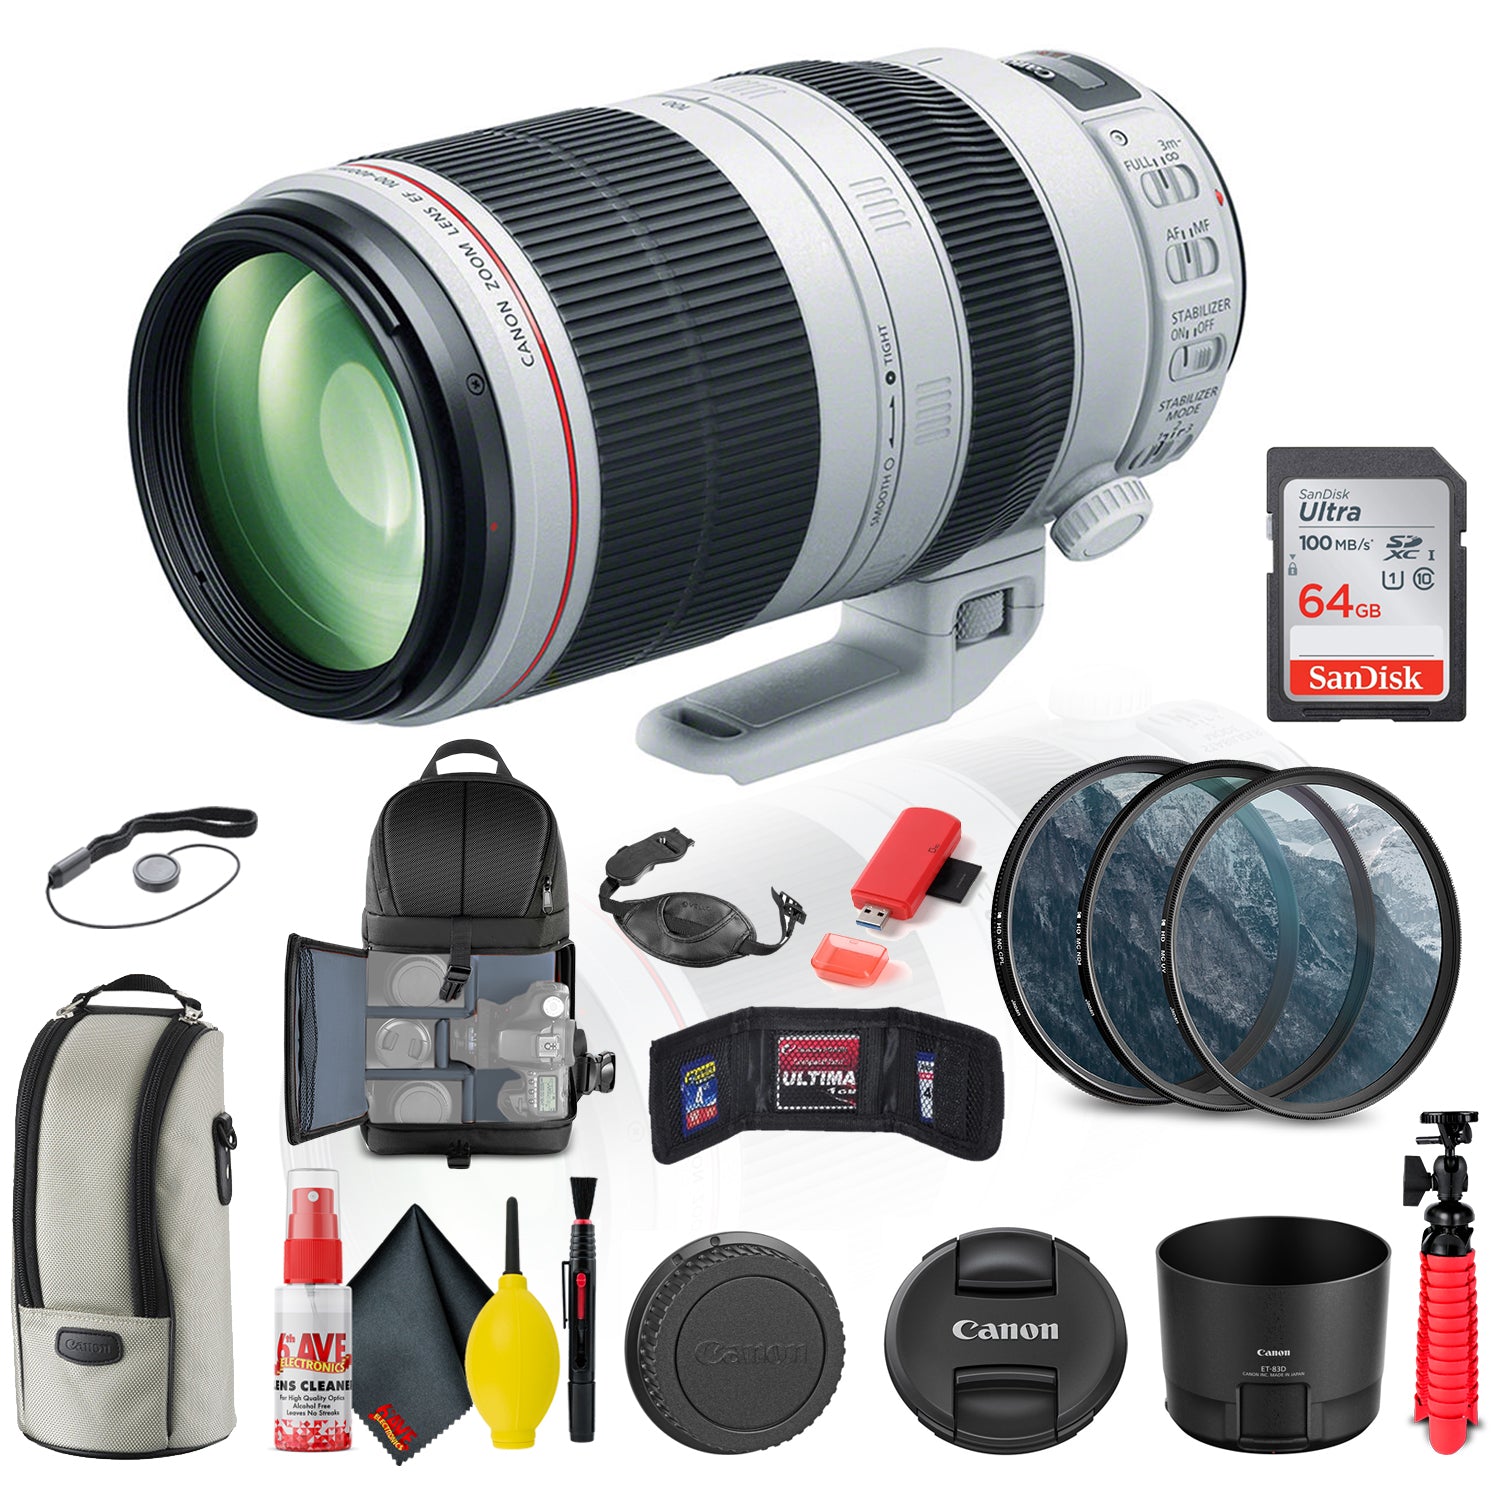 Canon EF 100-400mm f/4.5-5.6L IS II USM Lens (9524B002) + Filter Kit + More